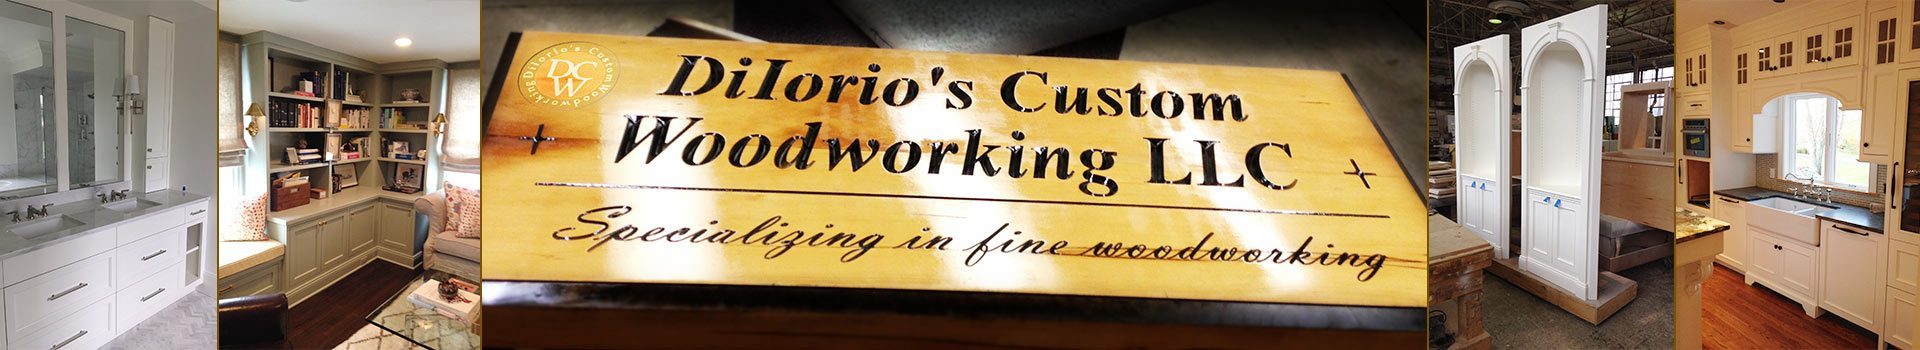 DiIorio's Custom Woodworking